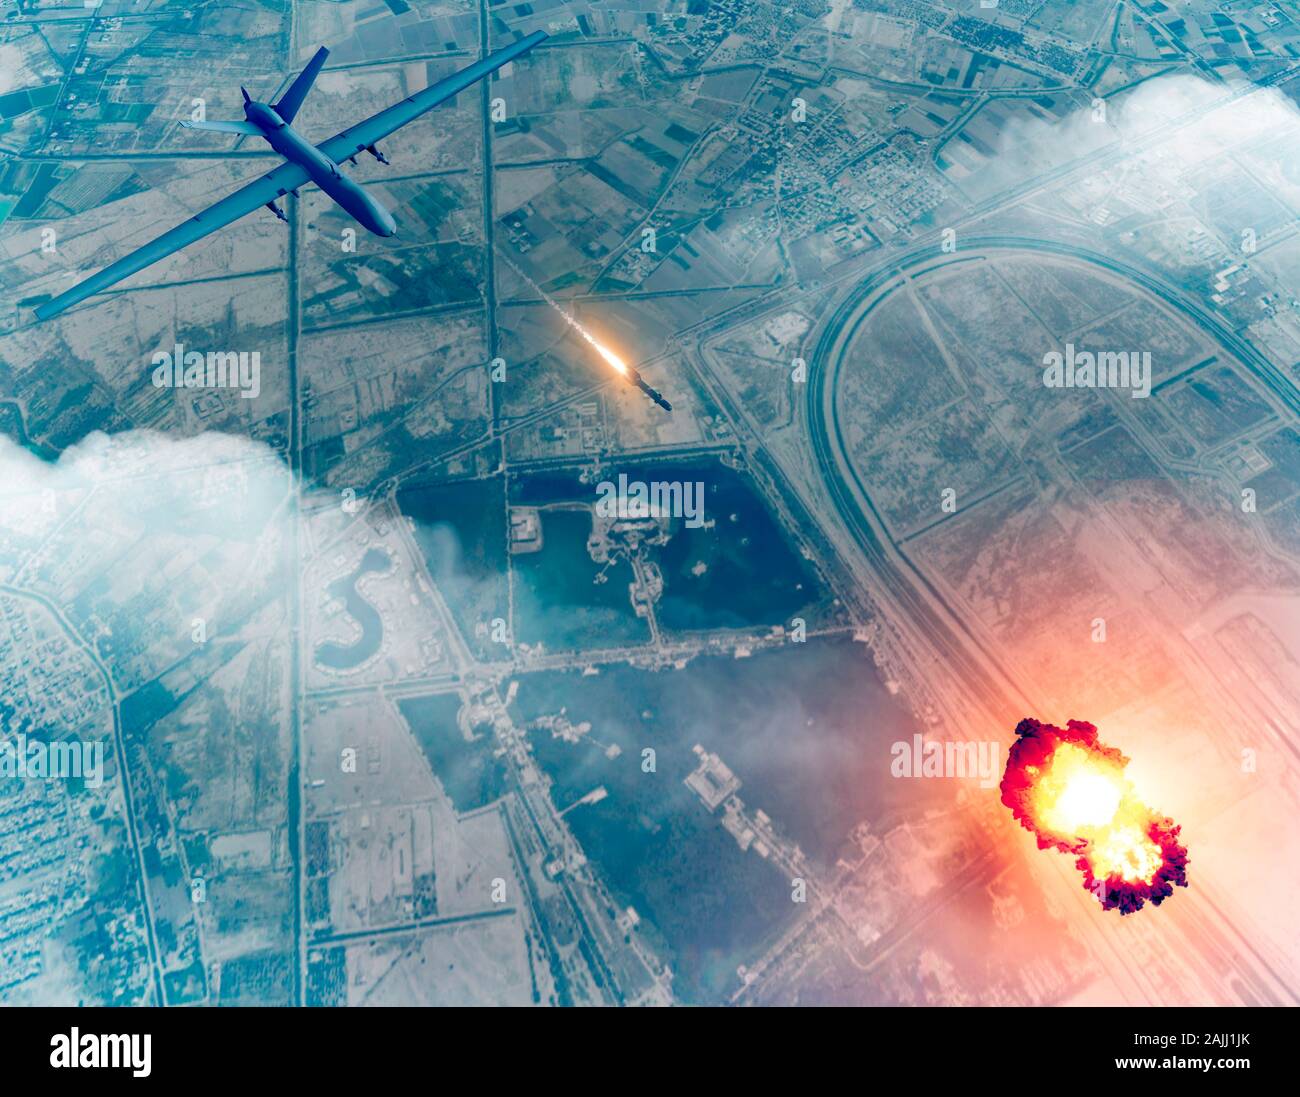 Noi drone attacco contro il convoglio del generale iraniano Soleimani Qassem, 3d rendering. Aeroporto di Baghdad, Iraq. Foto Stock